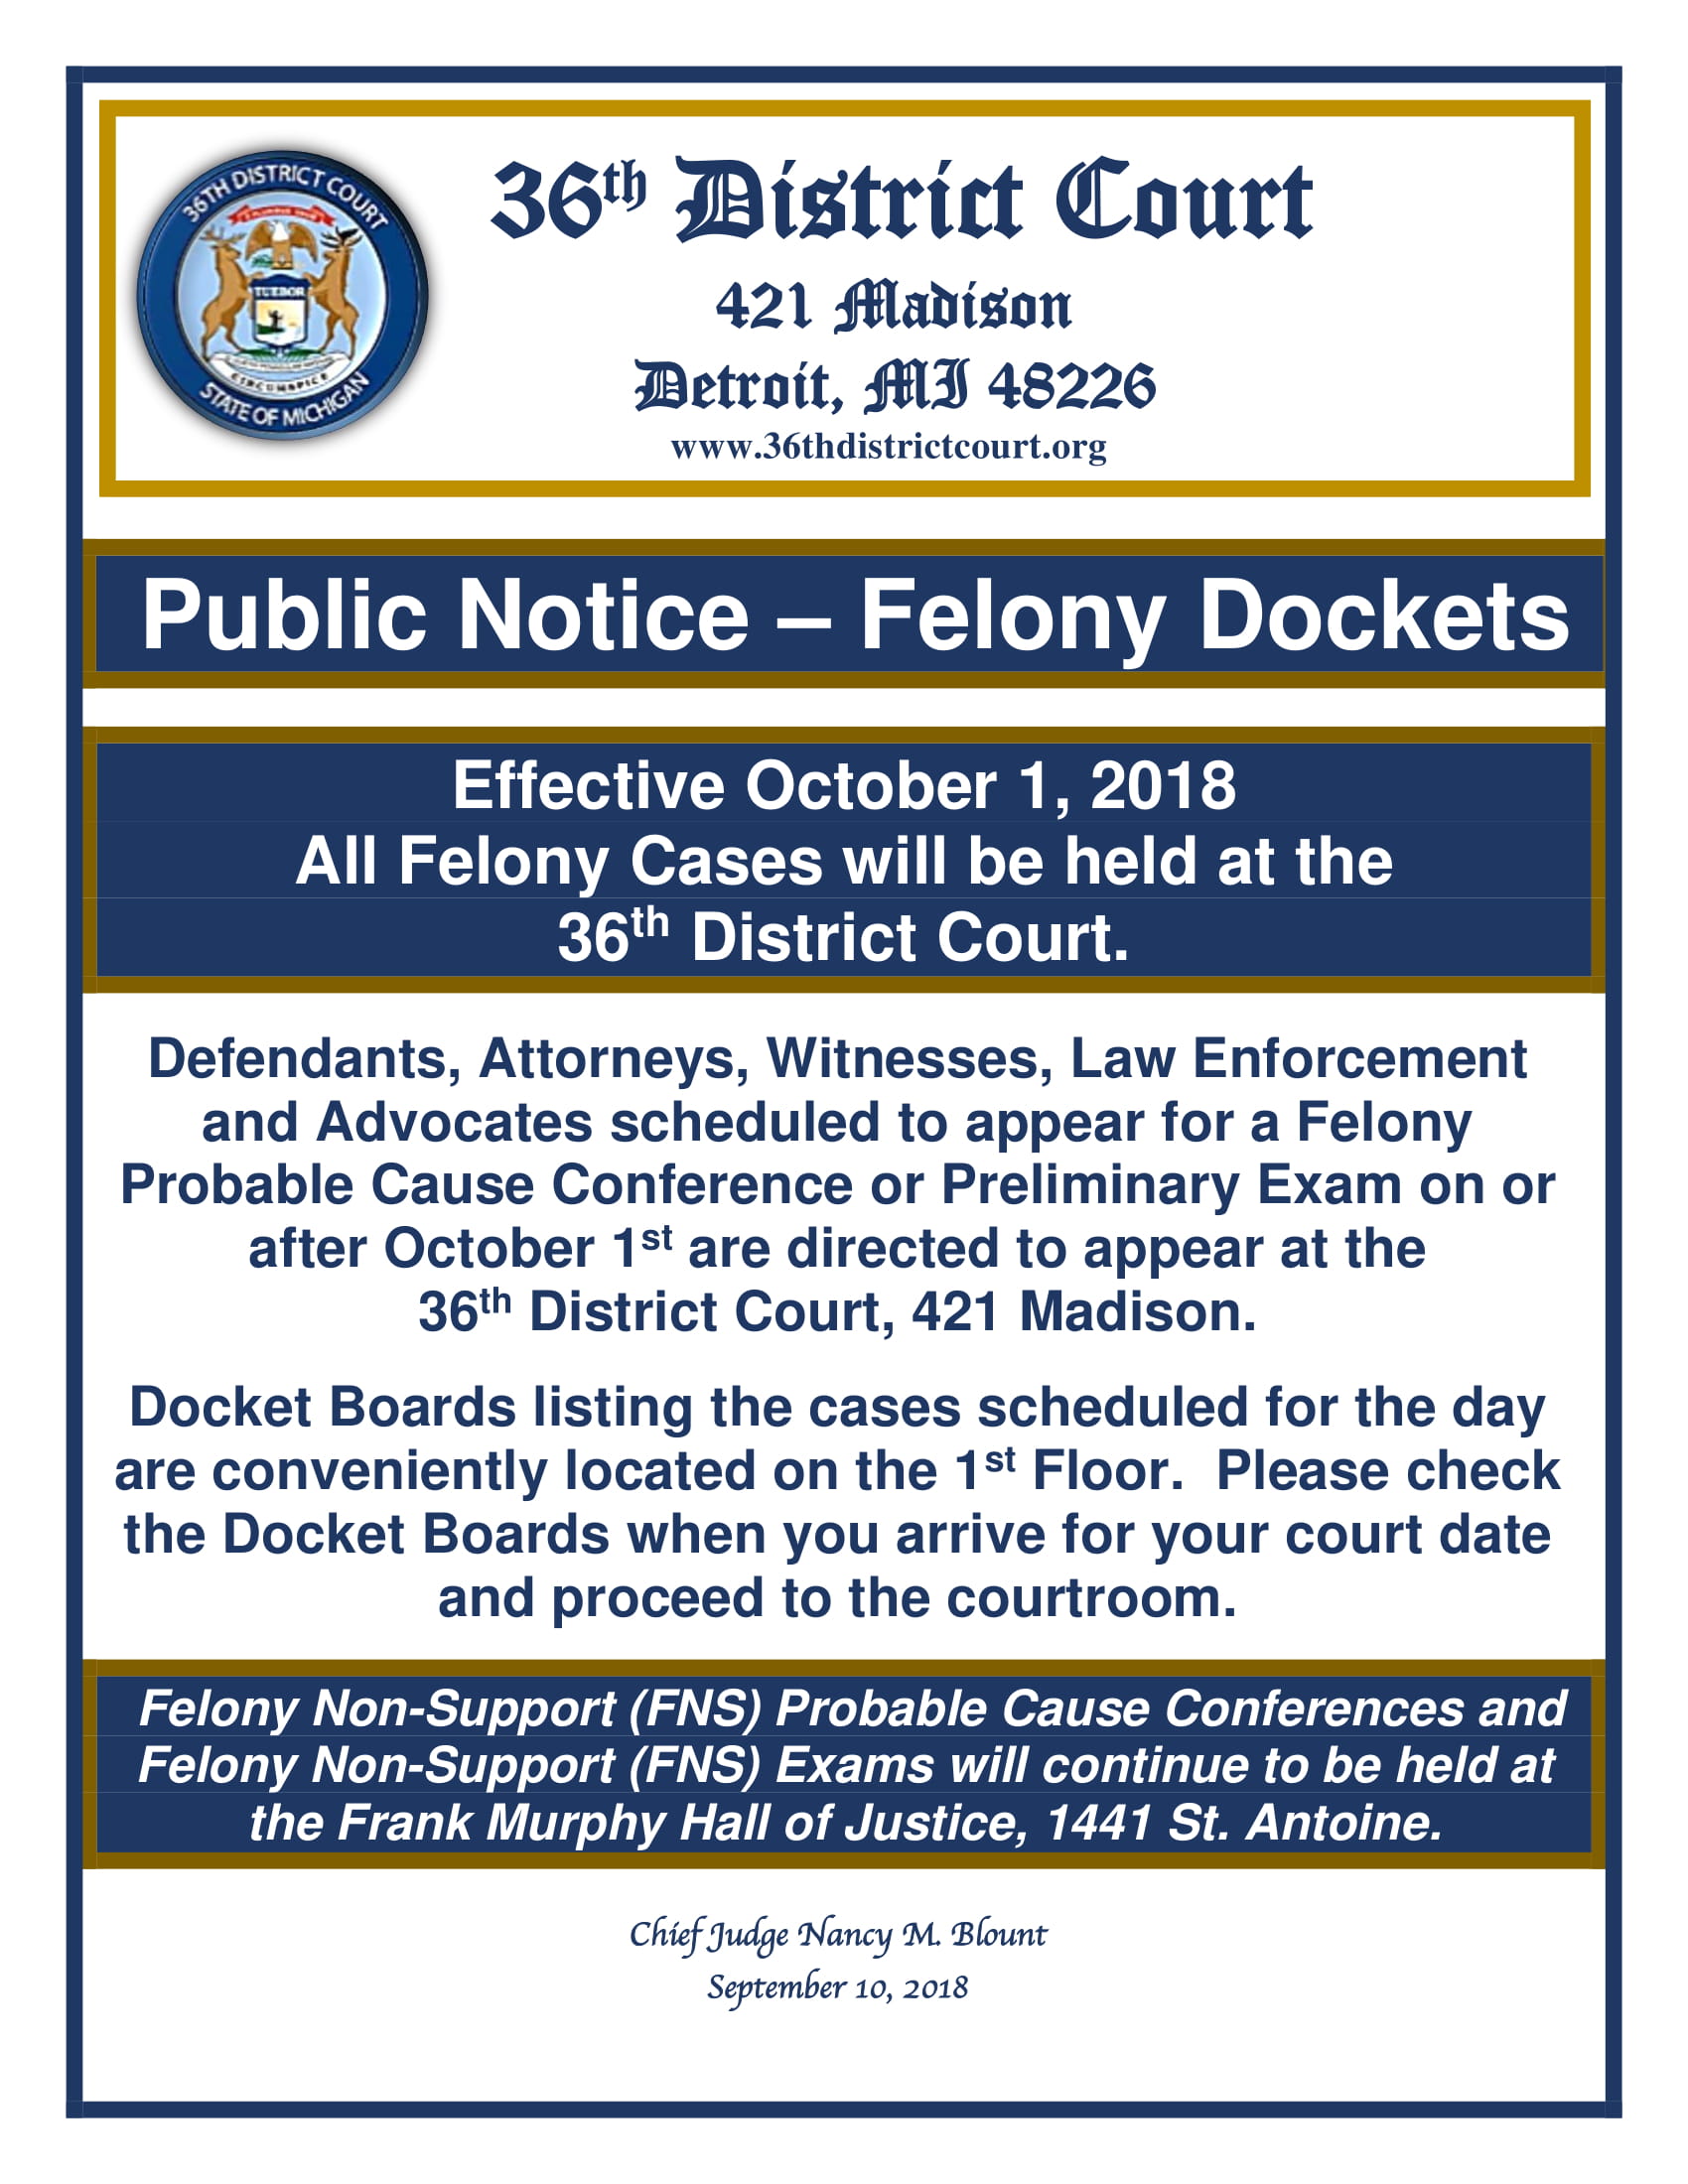 Public Notice: Felony Dockets